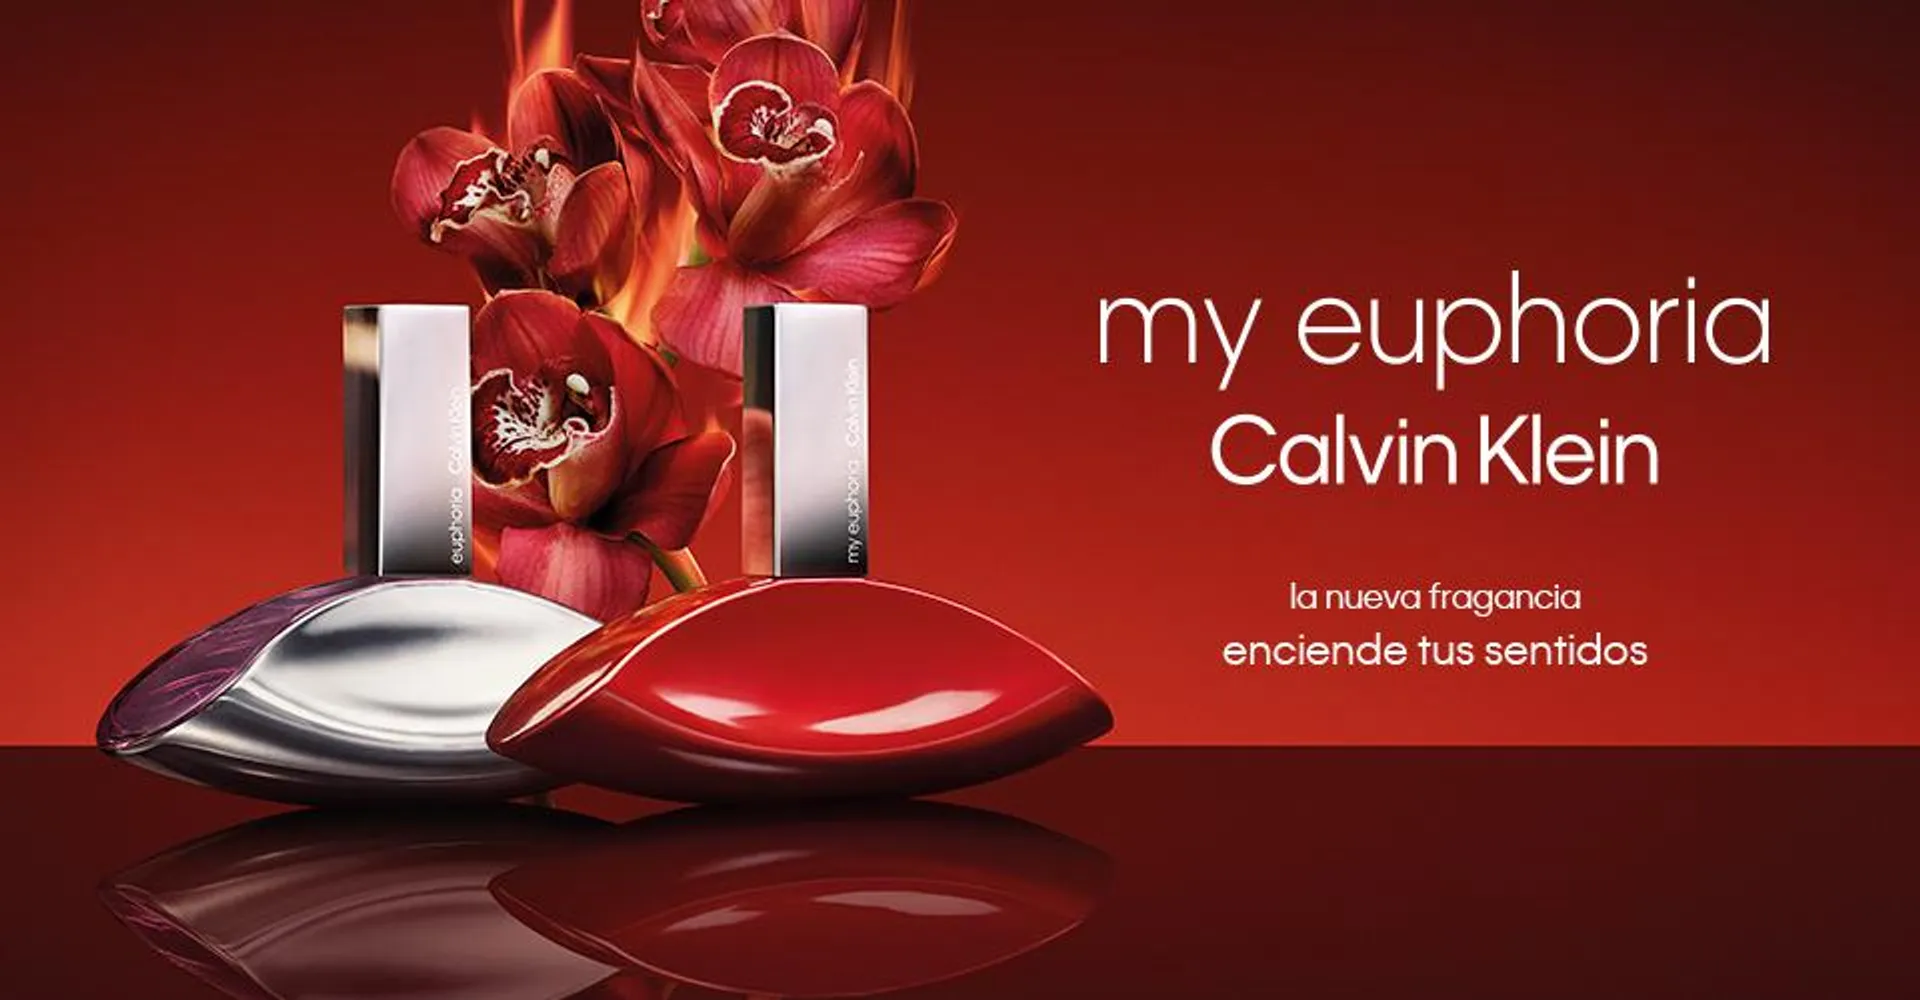 CALVIN KLEIN, la marca de perfumes con estilo propio